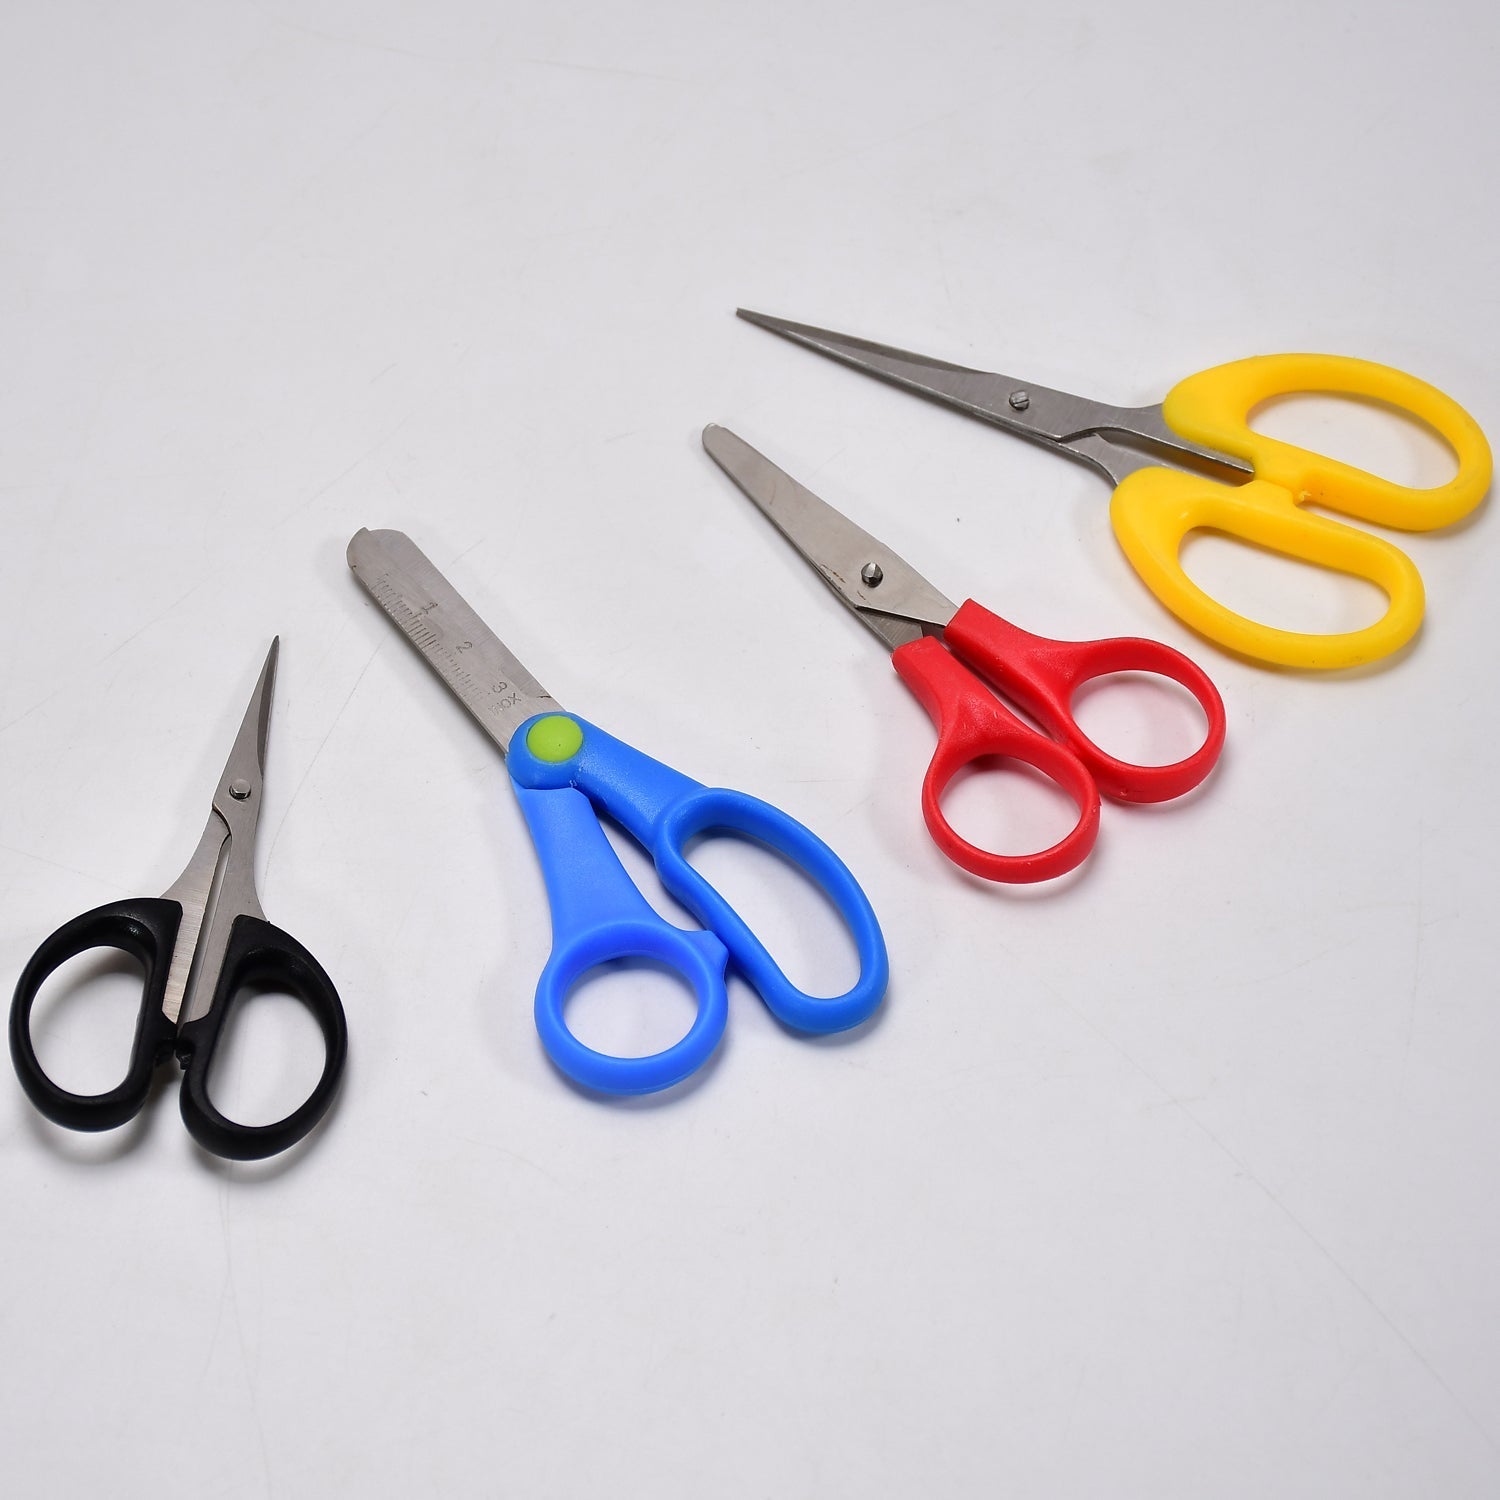 9128 Multipurpose Large Stainless Steel Scissor For Home Scissors/Office Scissors/School Work Scissors /Cutting / Croping Scissors /Tailoring Scissors ( Mix 1 Kg ) DeoDap